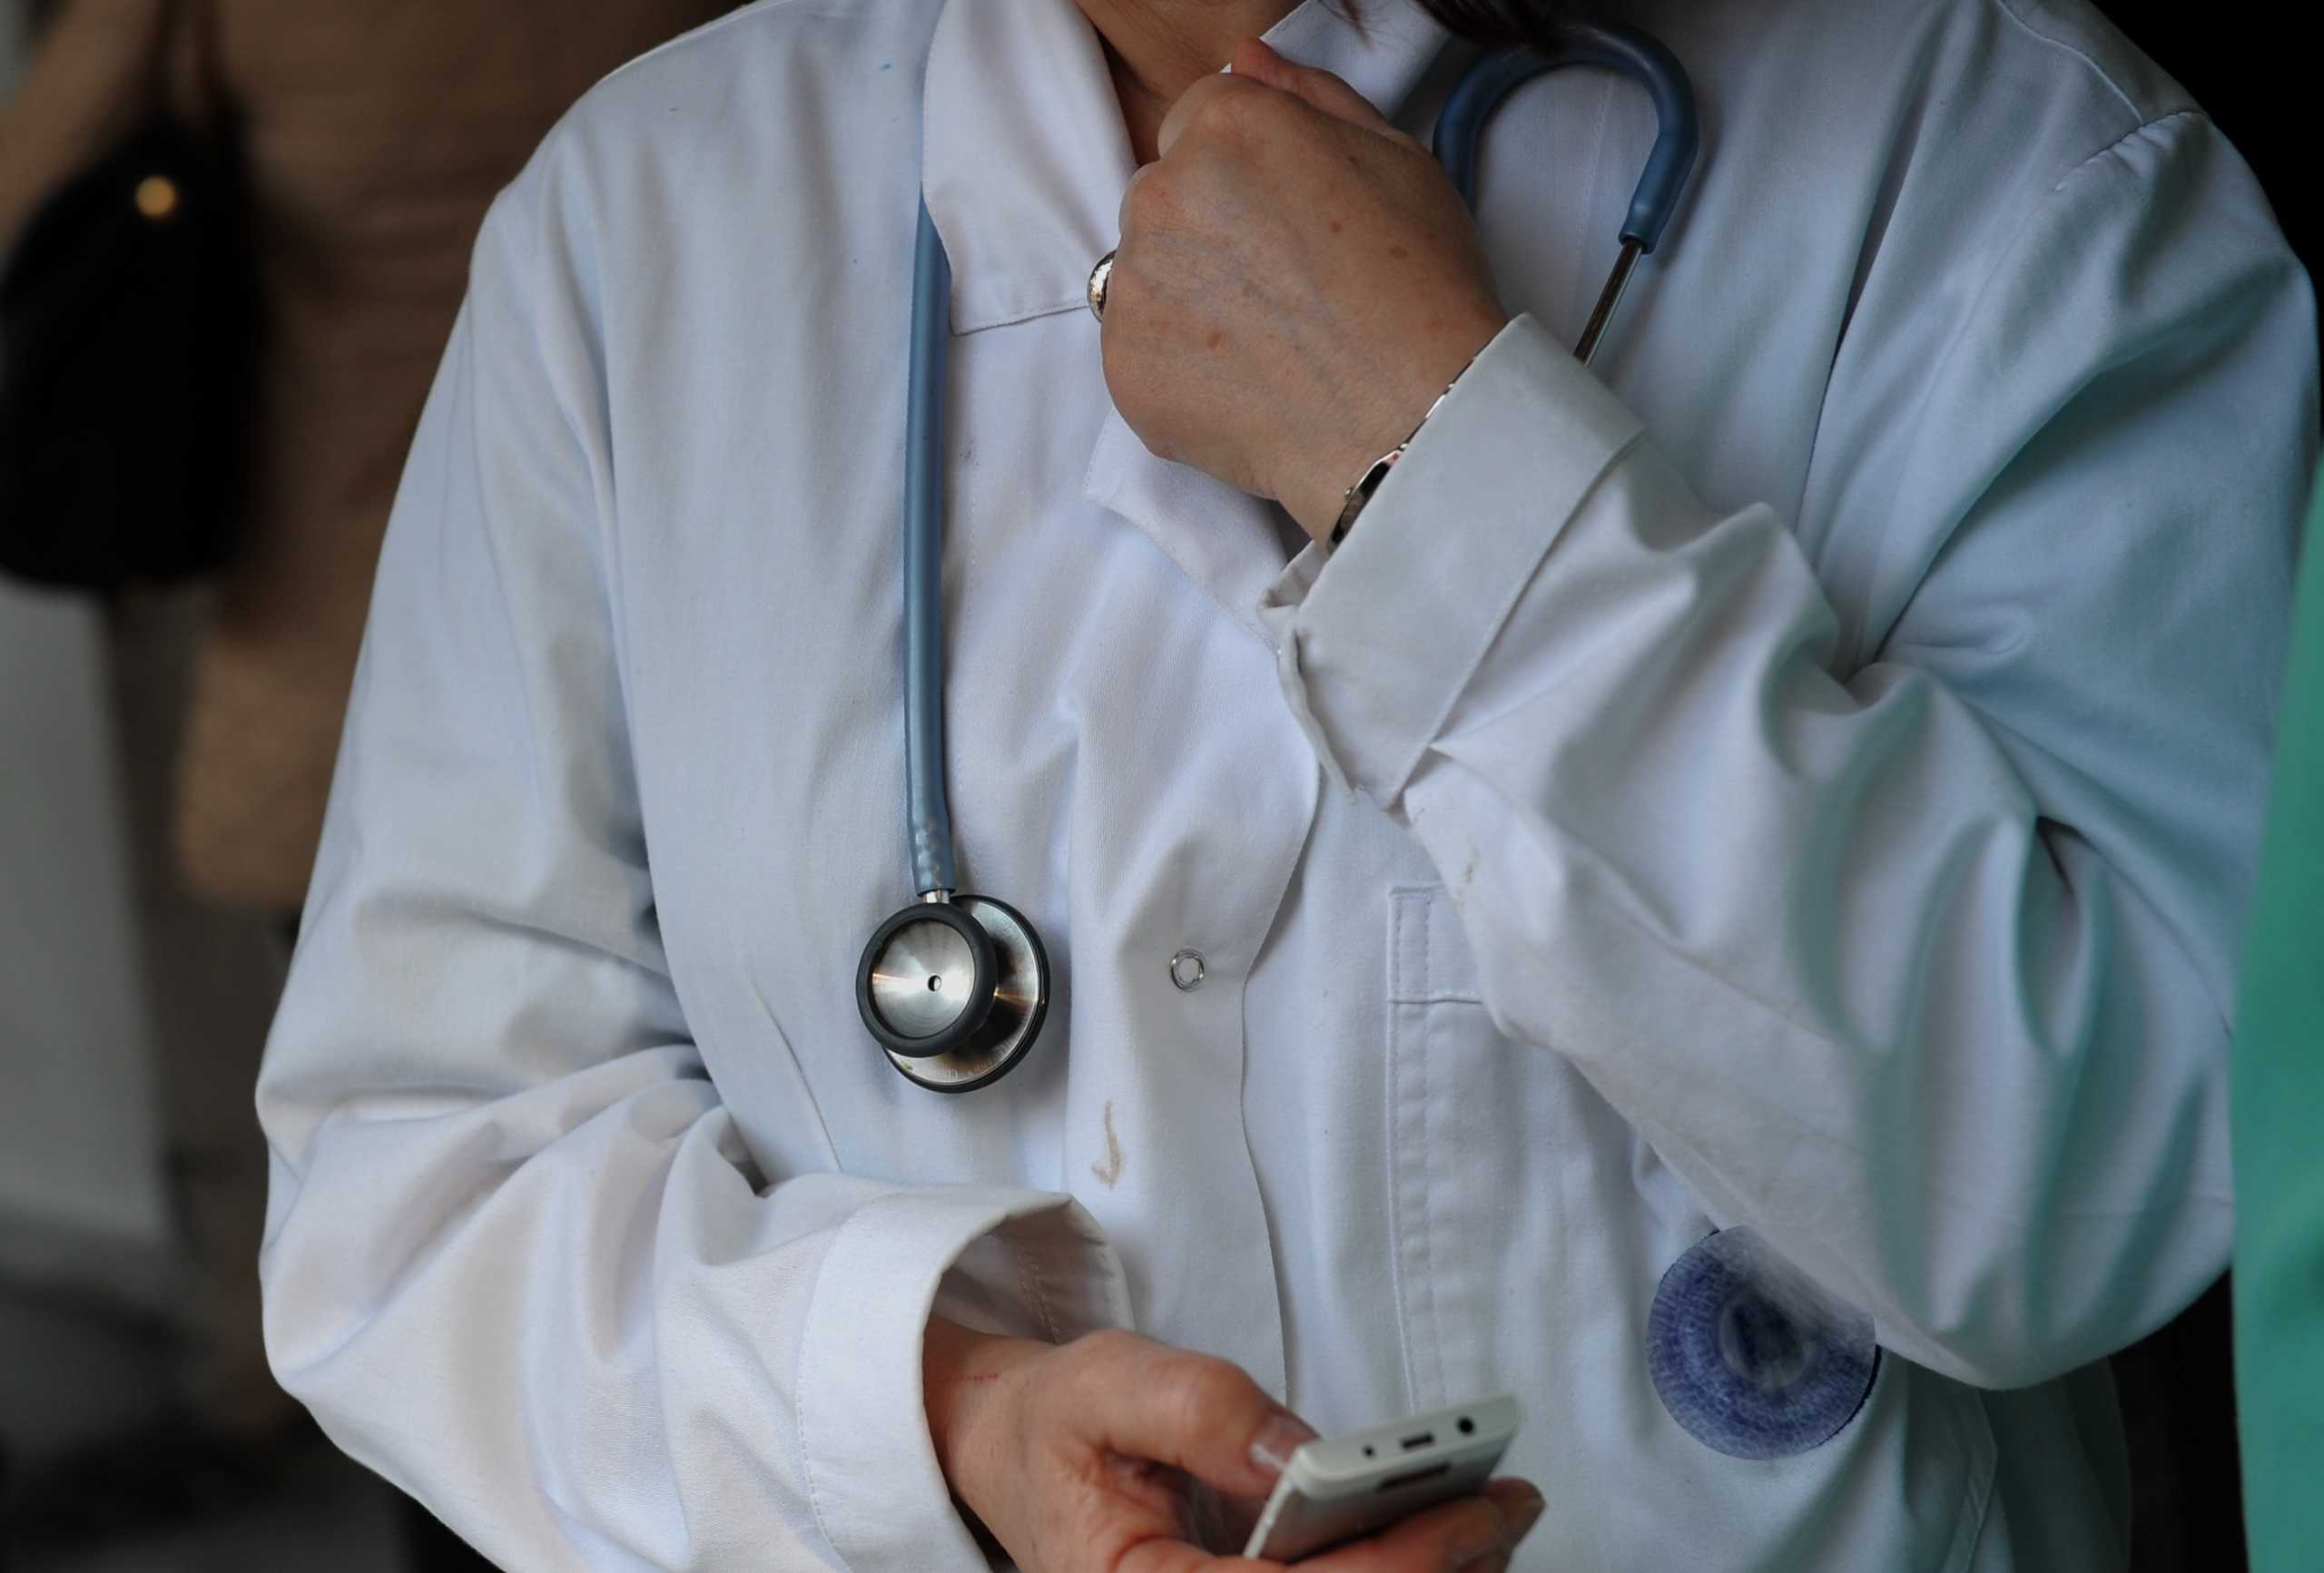 Ψηφιακό ραντεβού για γιατρό με 4 κλικ – Σε λειτουργία το finddoctors.gov.gr